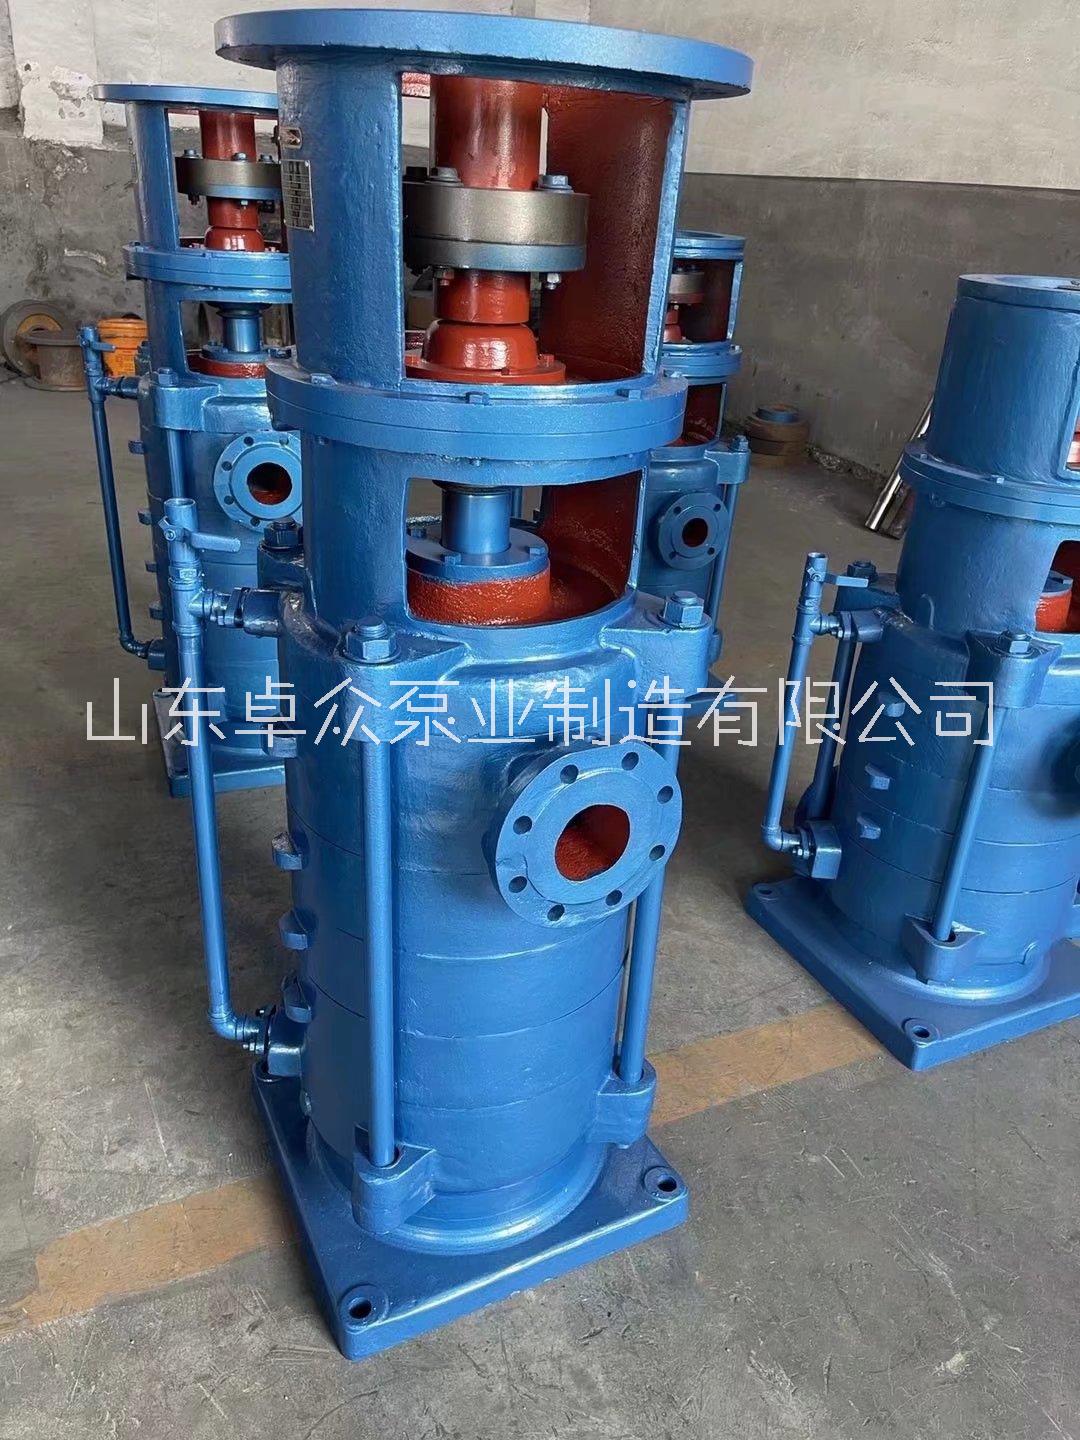 山东卓众泵业生产 DL、DLR系列多级泵质量稳定